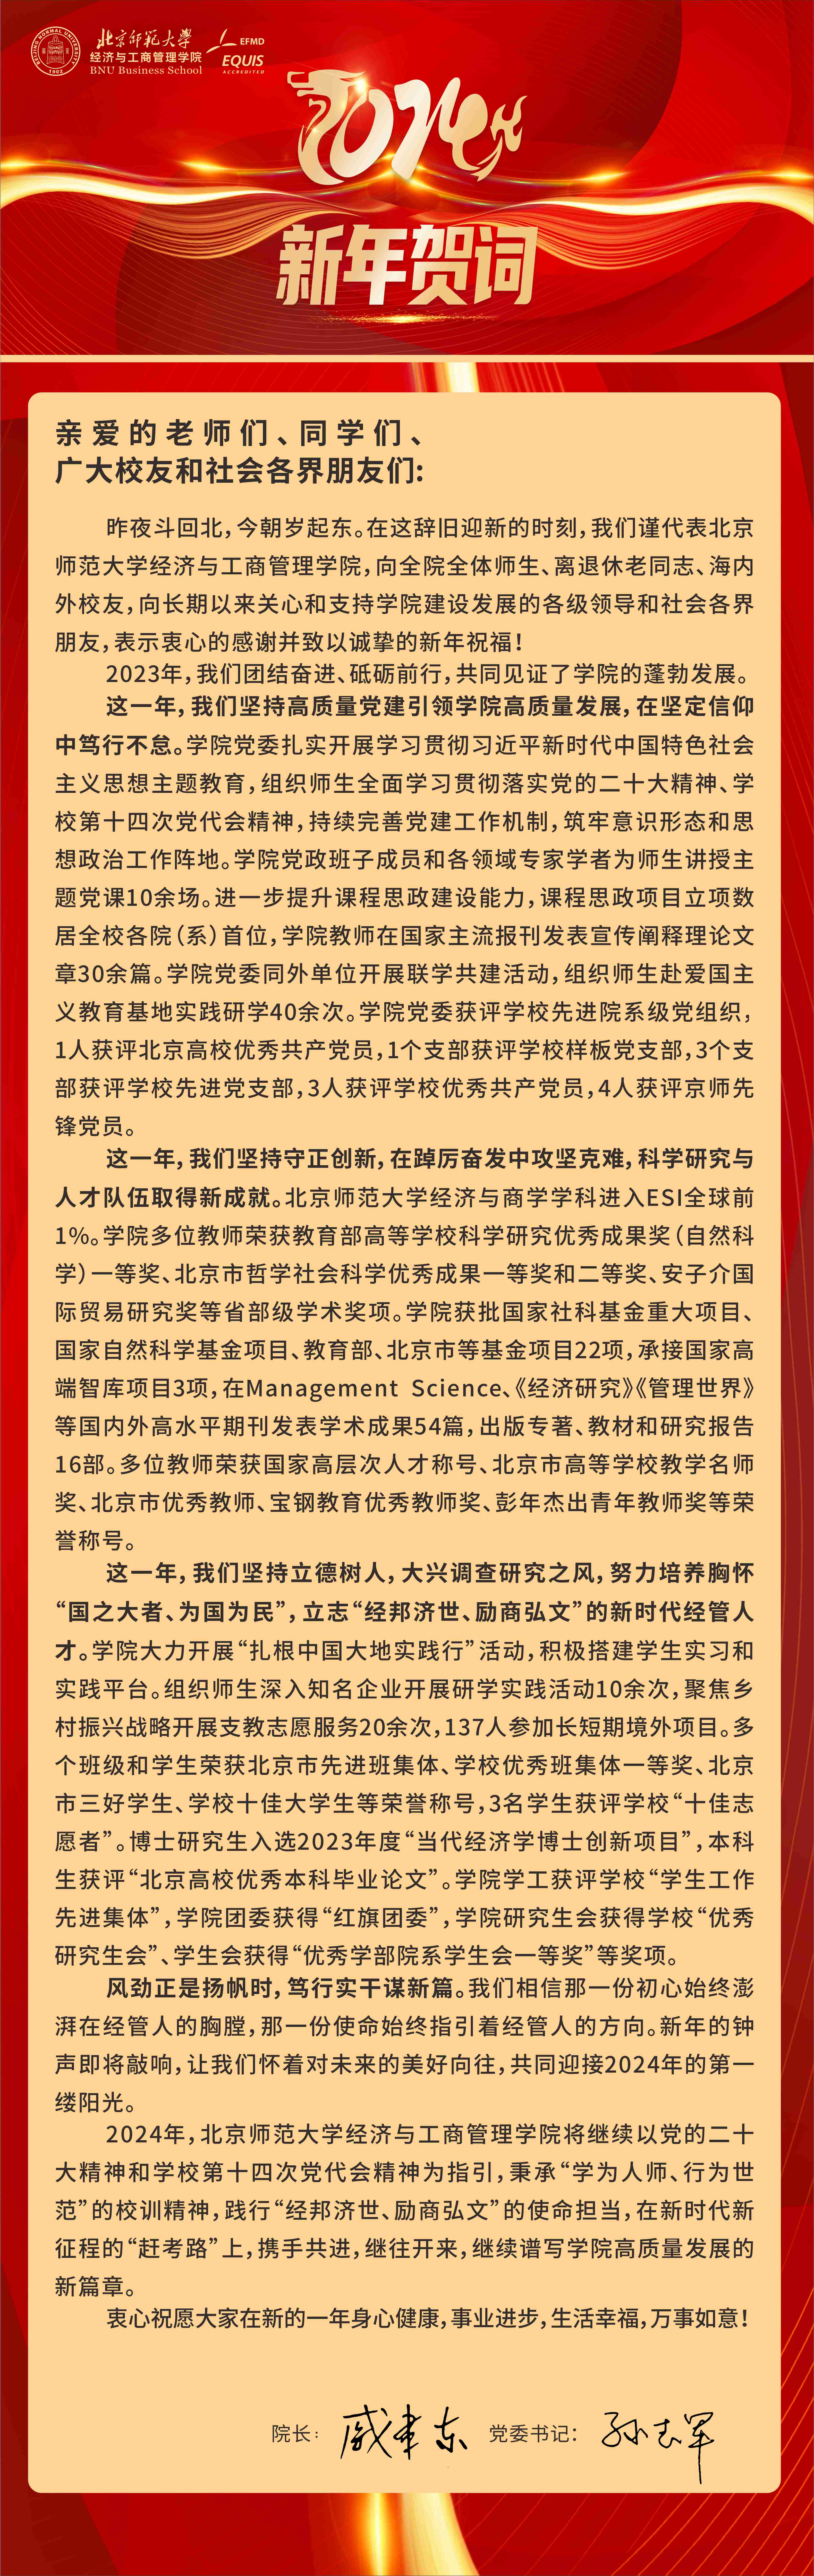 北京师范大学经济与工商管理学院2024年新年贺词.jpg